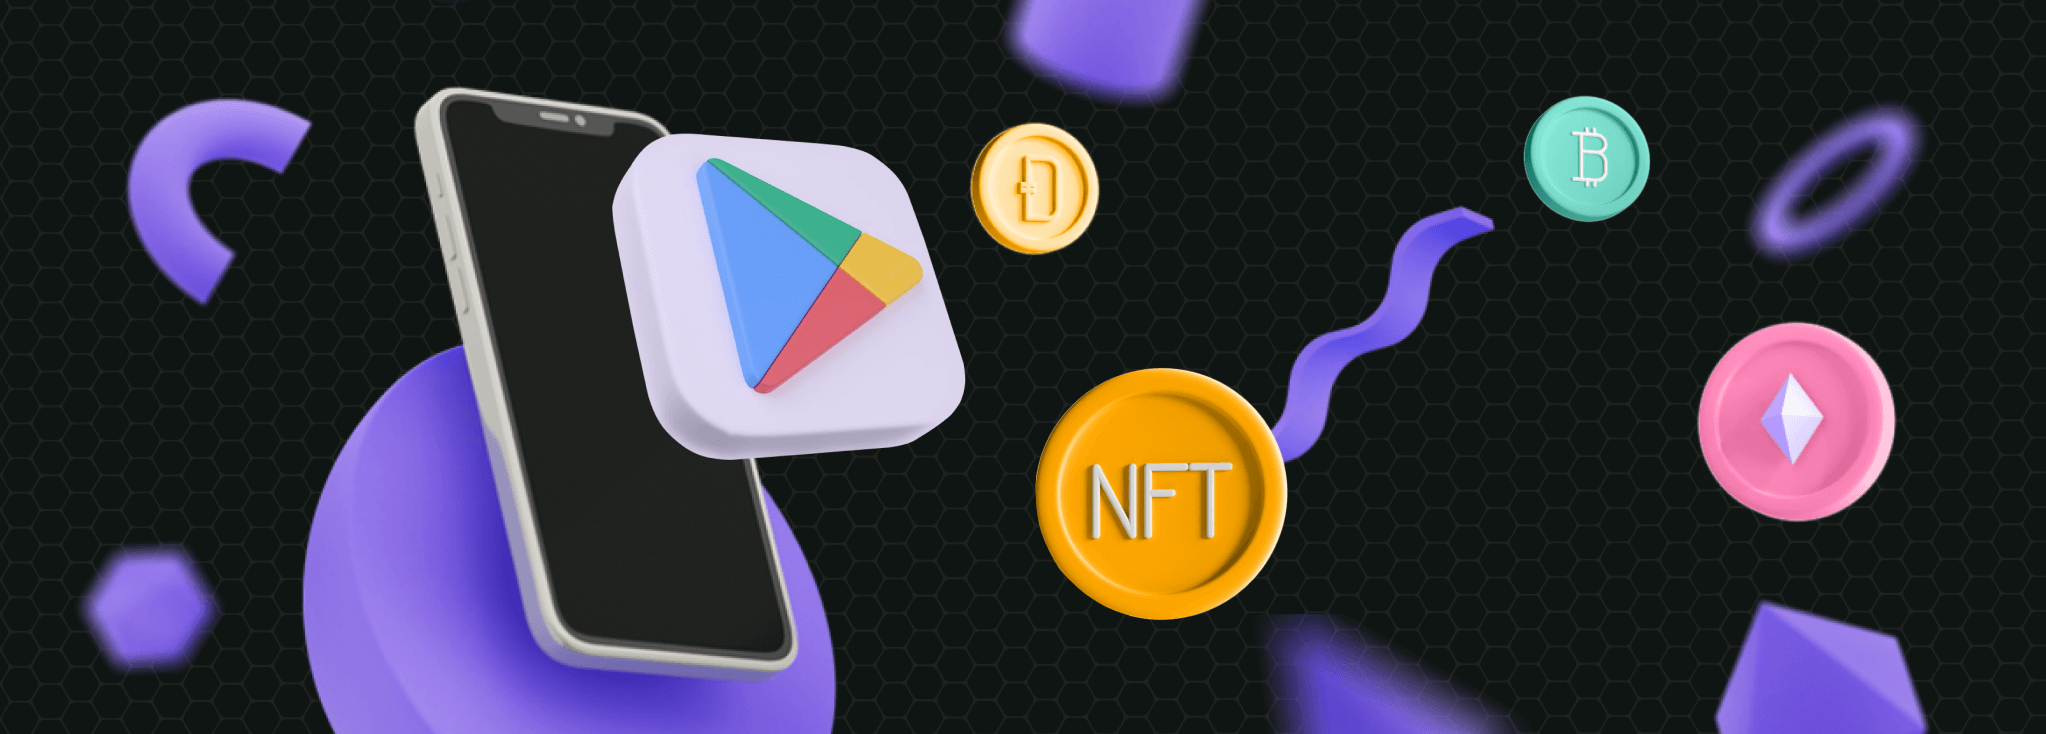 Integración de NFT Ahora Posible en Aplicaciones y Juegos: Política Actualizada de Google Play